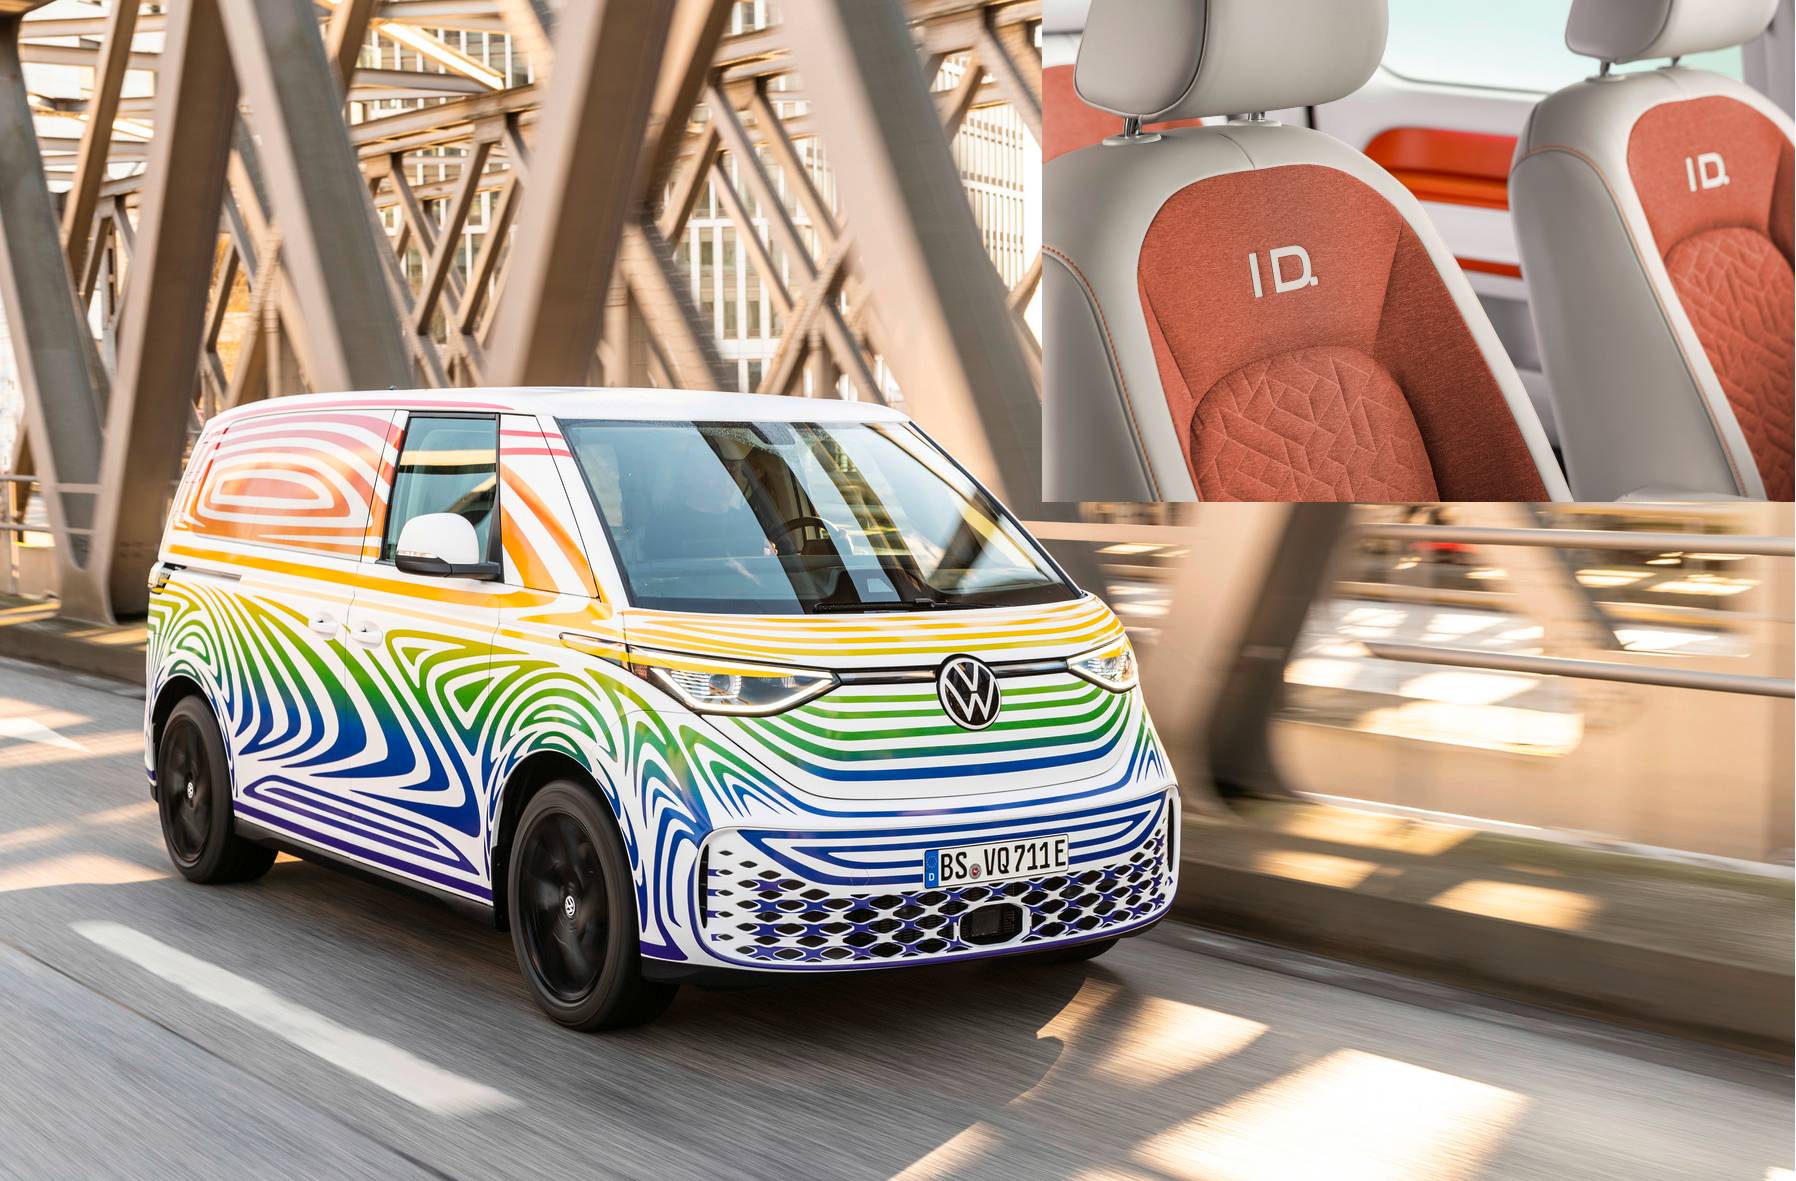 Volkswagen dévoile l'intérieur de la camionnette électrique ID Buzz à l'approche de son lancement le 9 mars.